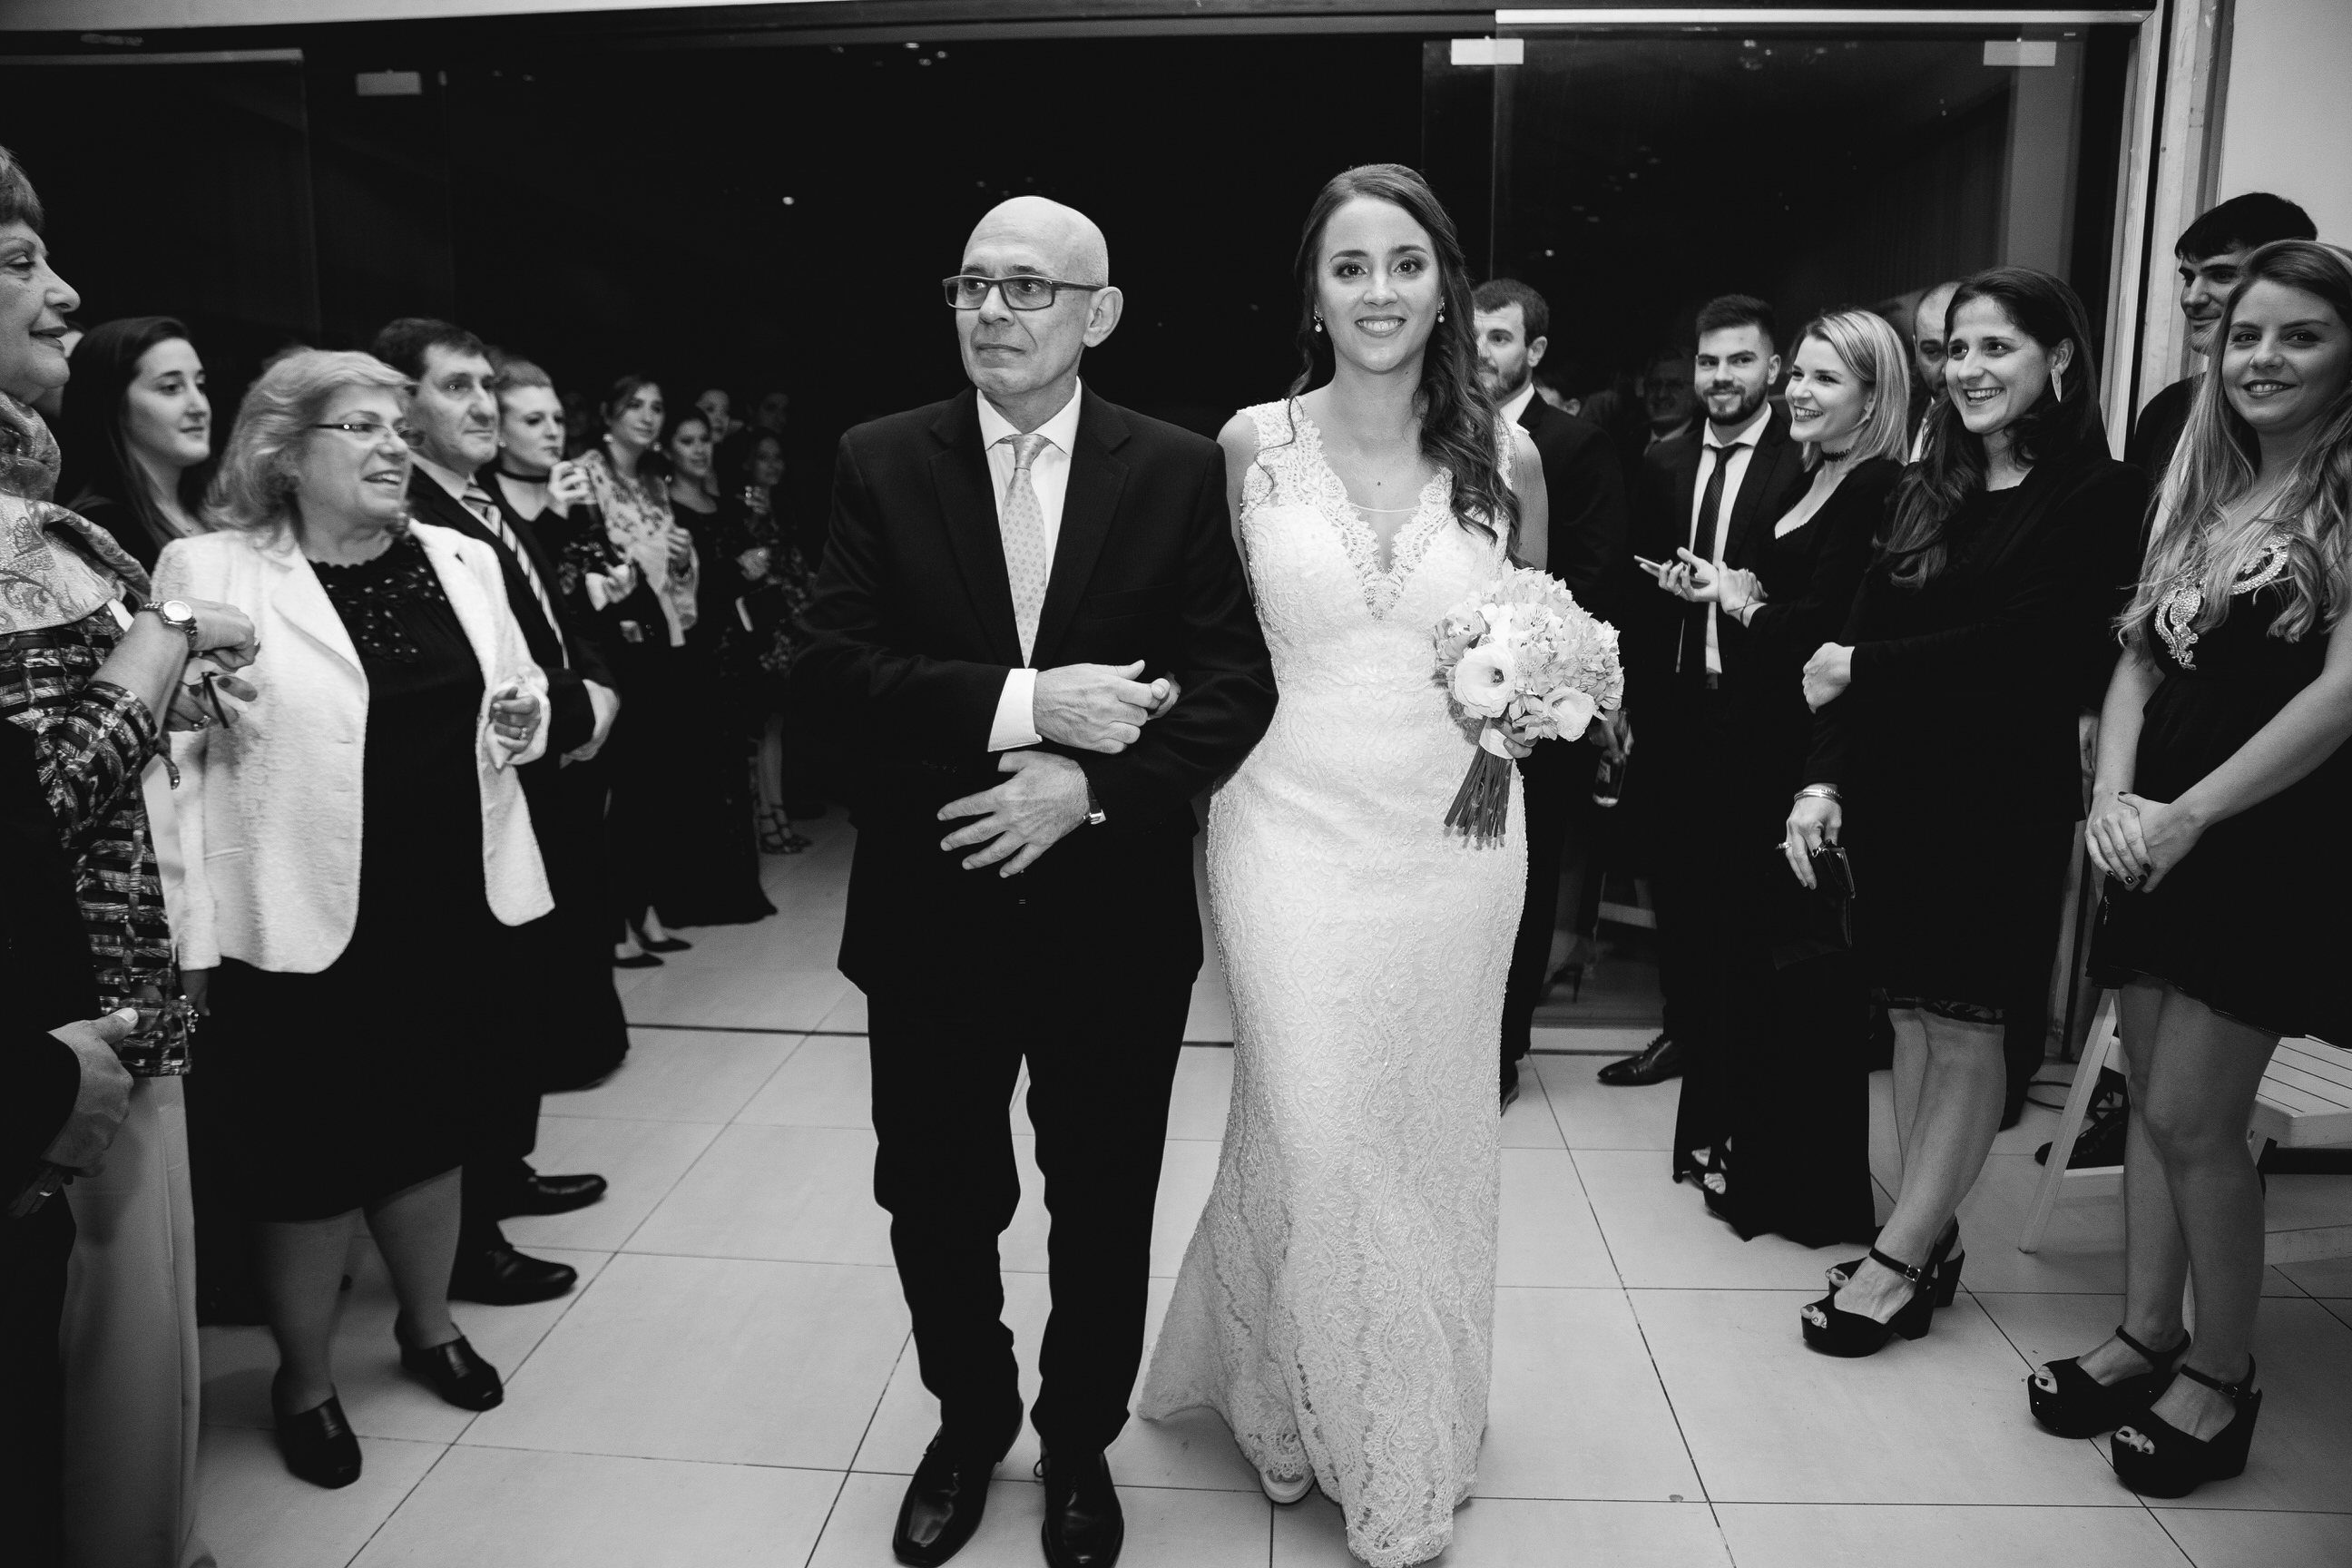 Fotos de la boda de Caro y German en Rosario realizadas por Bucle Fotografias Flor Bosio y Caro Clerici